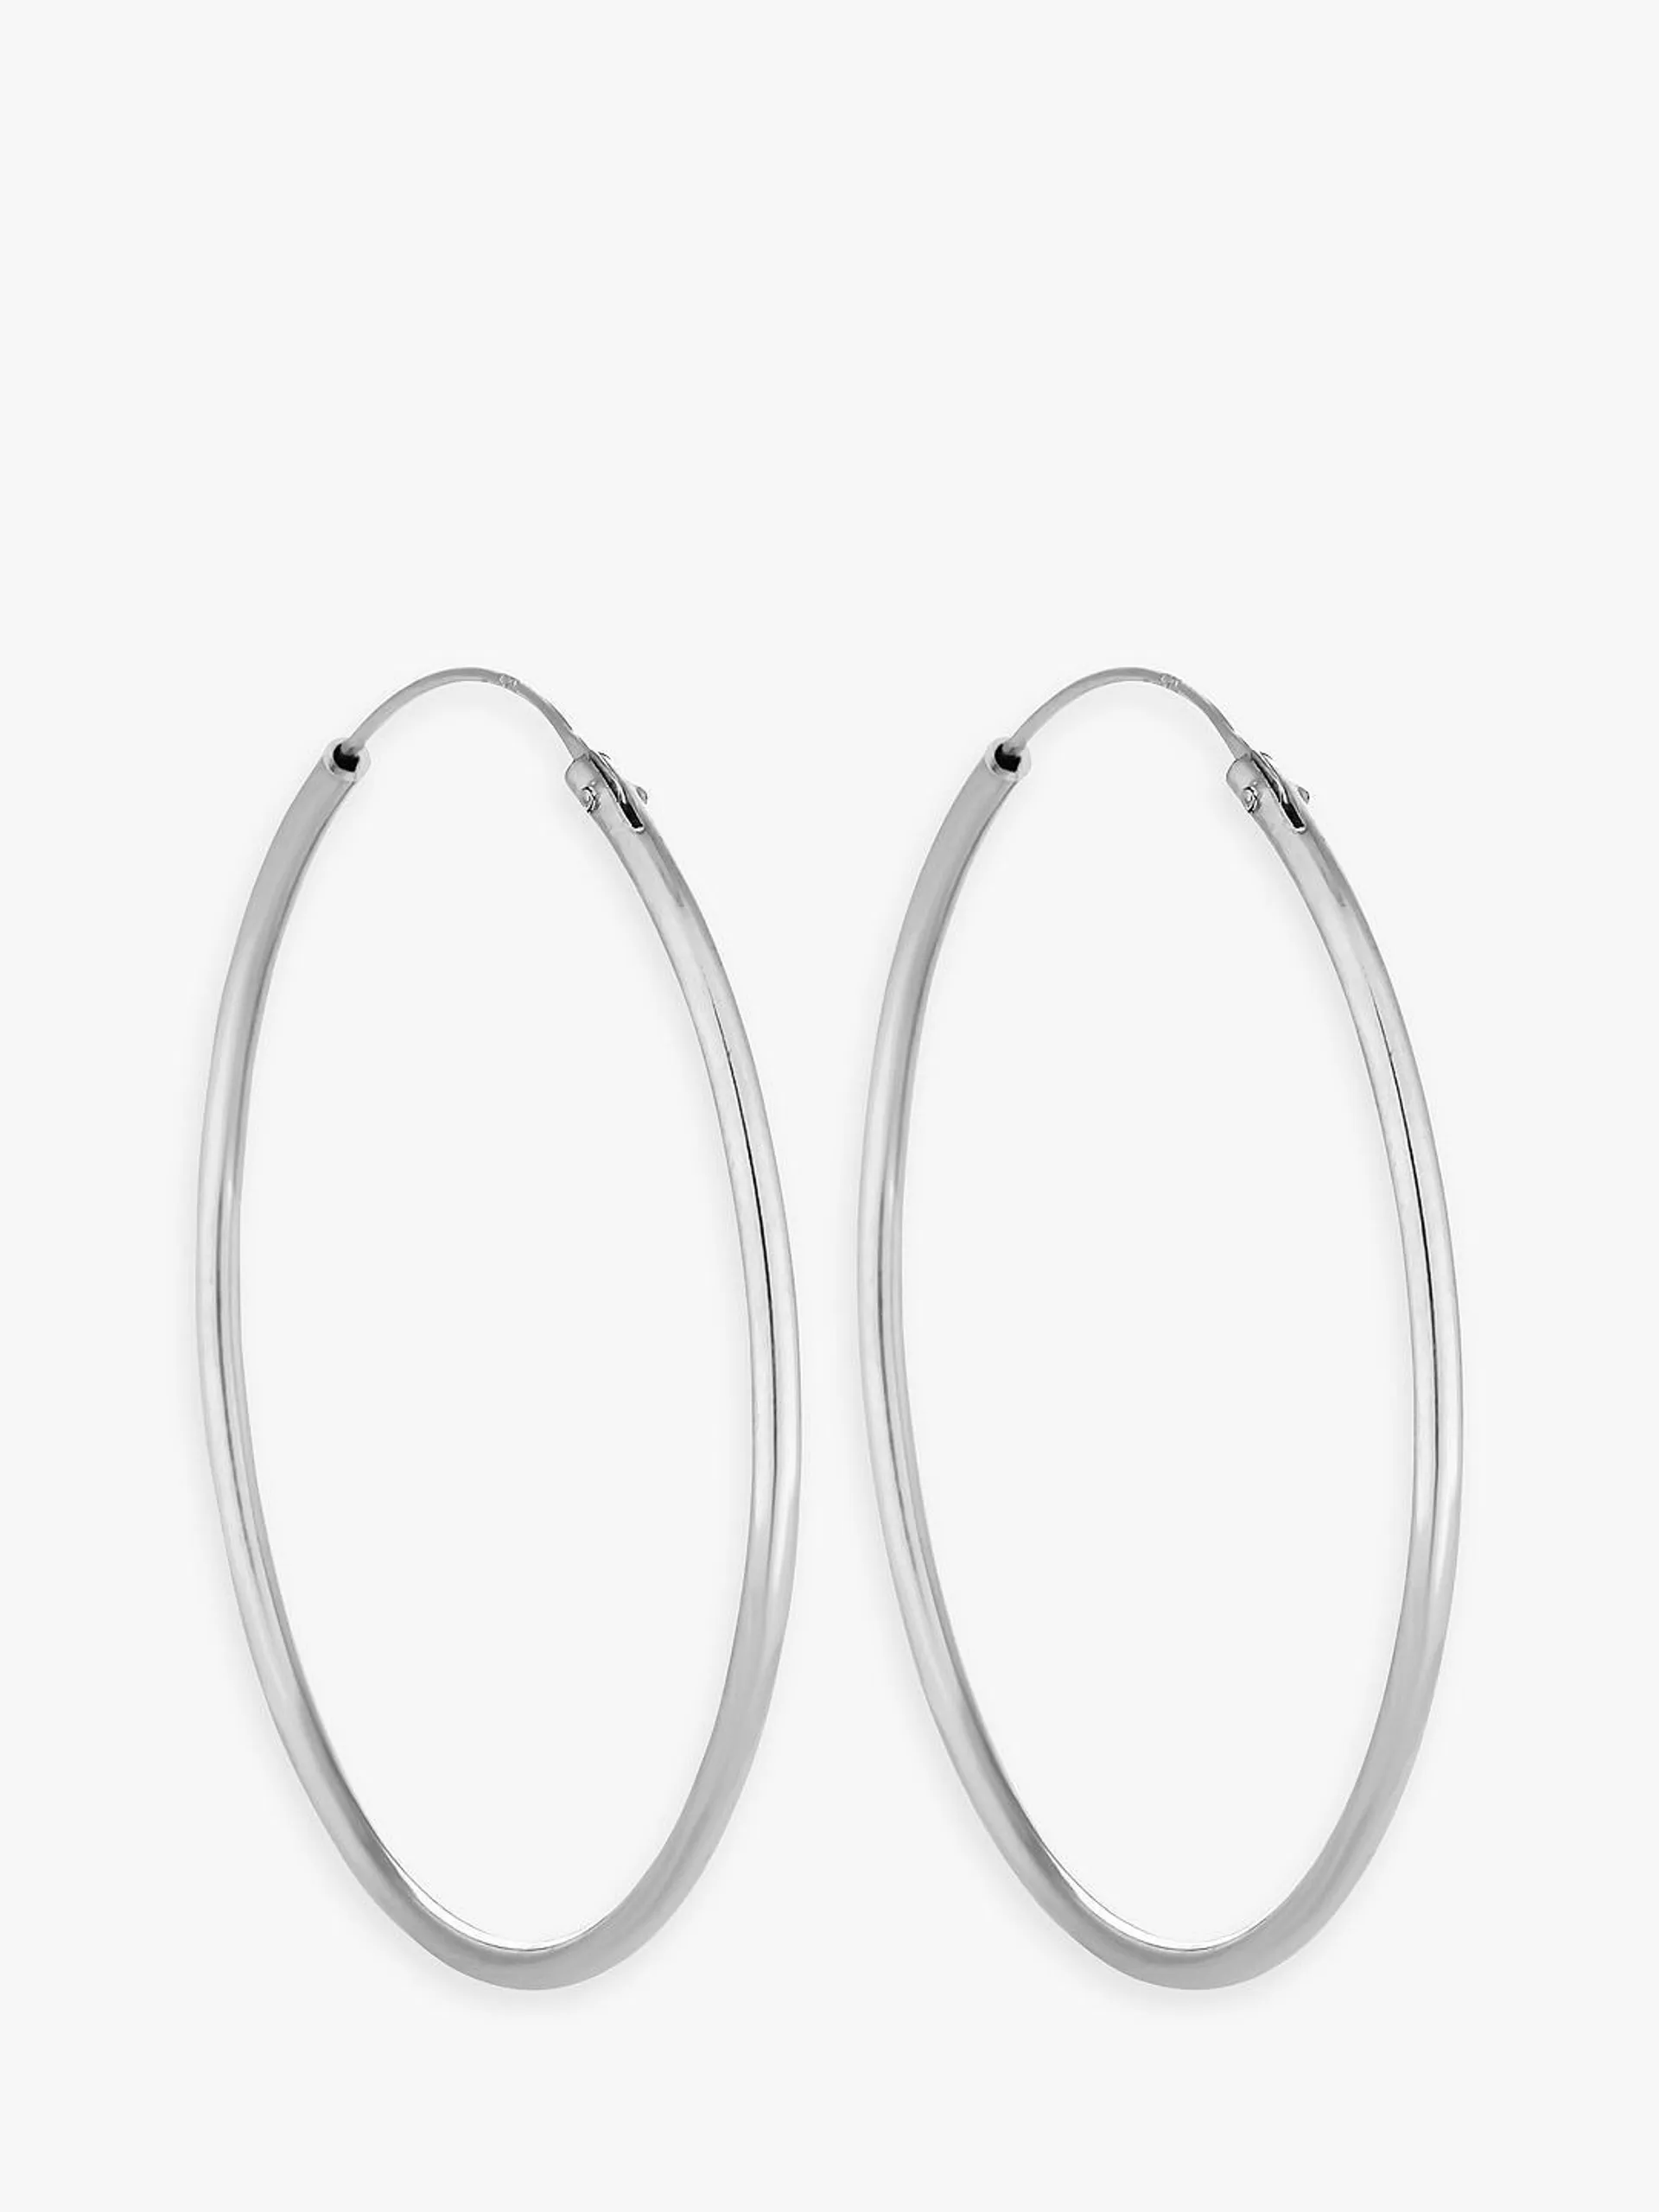 Simply Silver Medium Hoop Earrings, Silver